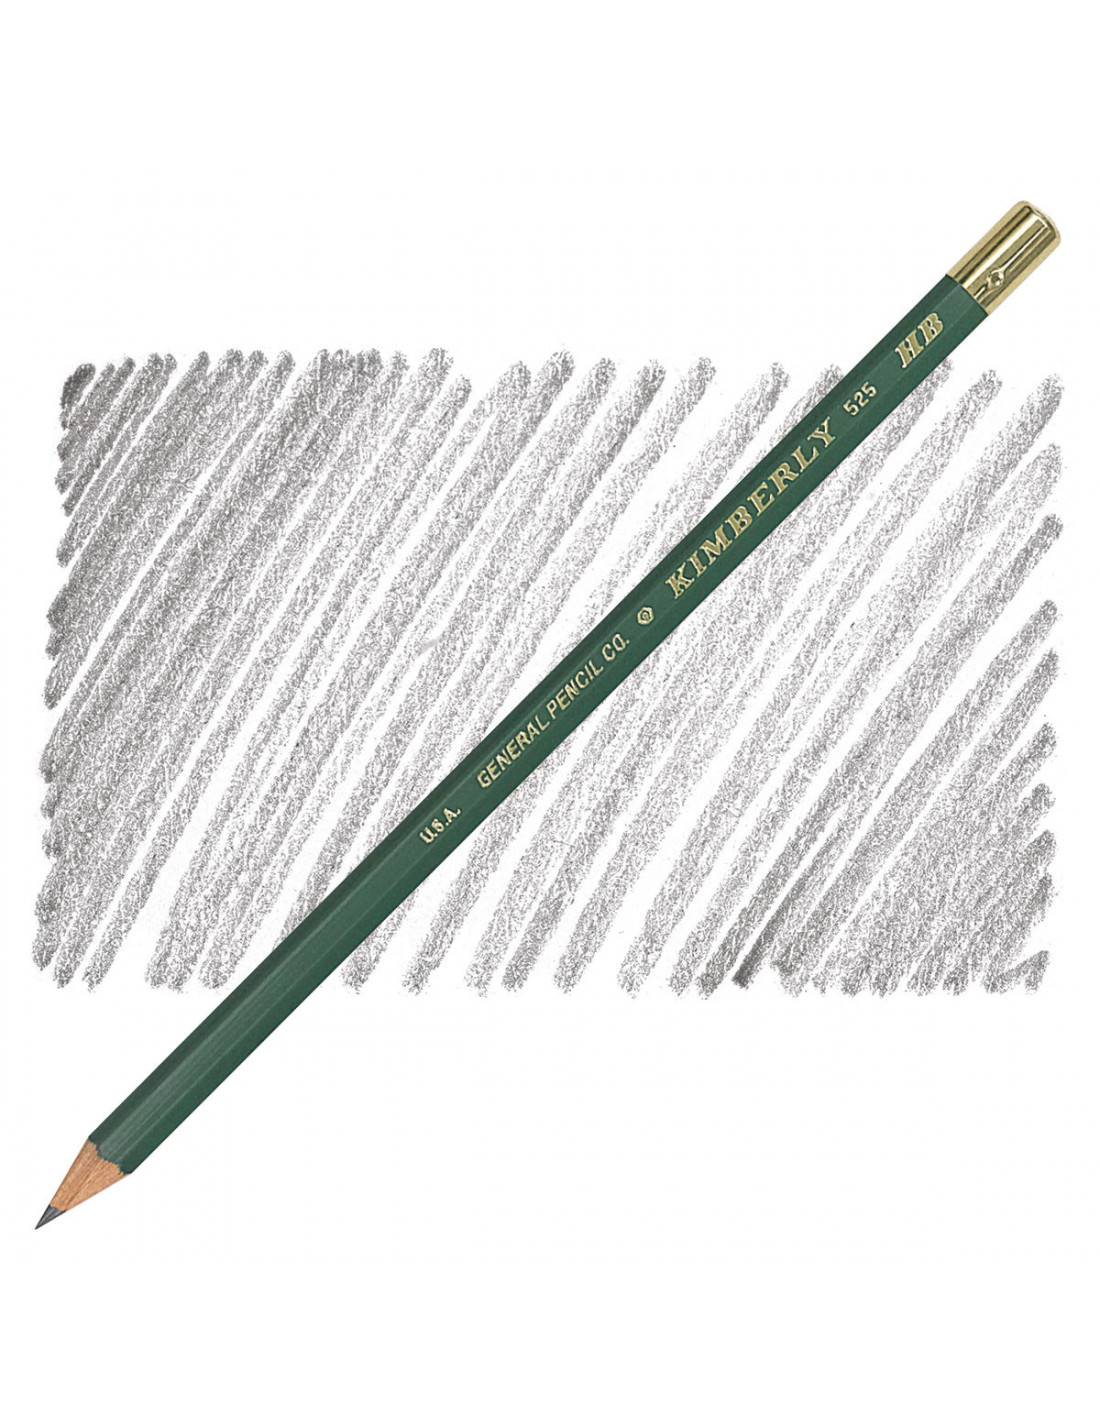 Crayon de charpentier plat pour esquisse N°529 - 2B - General Pencil Company